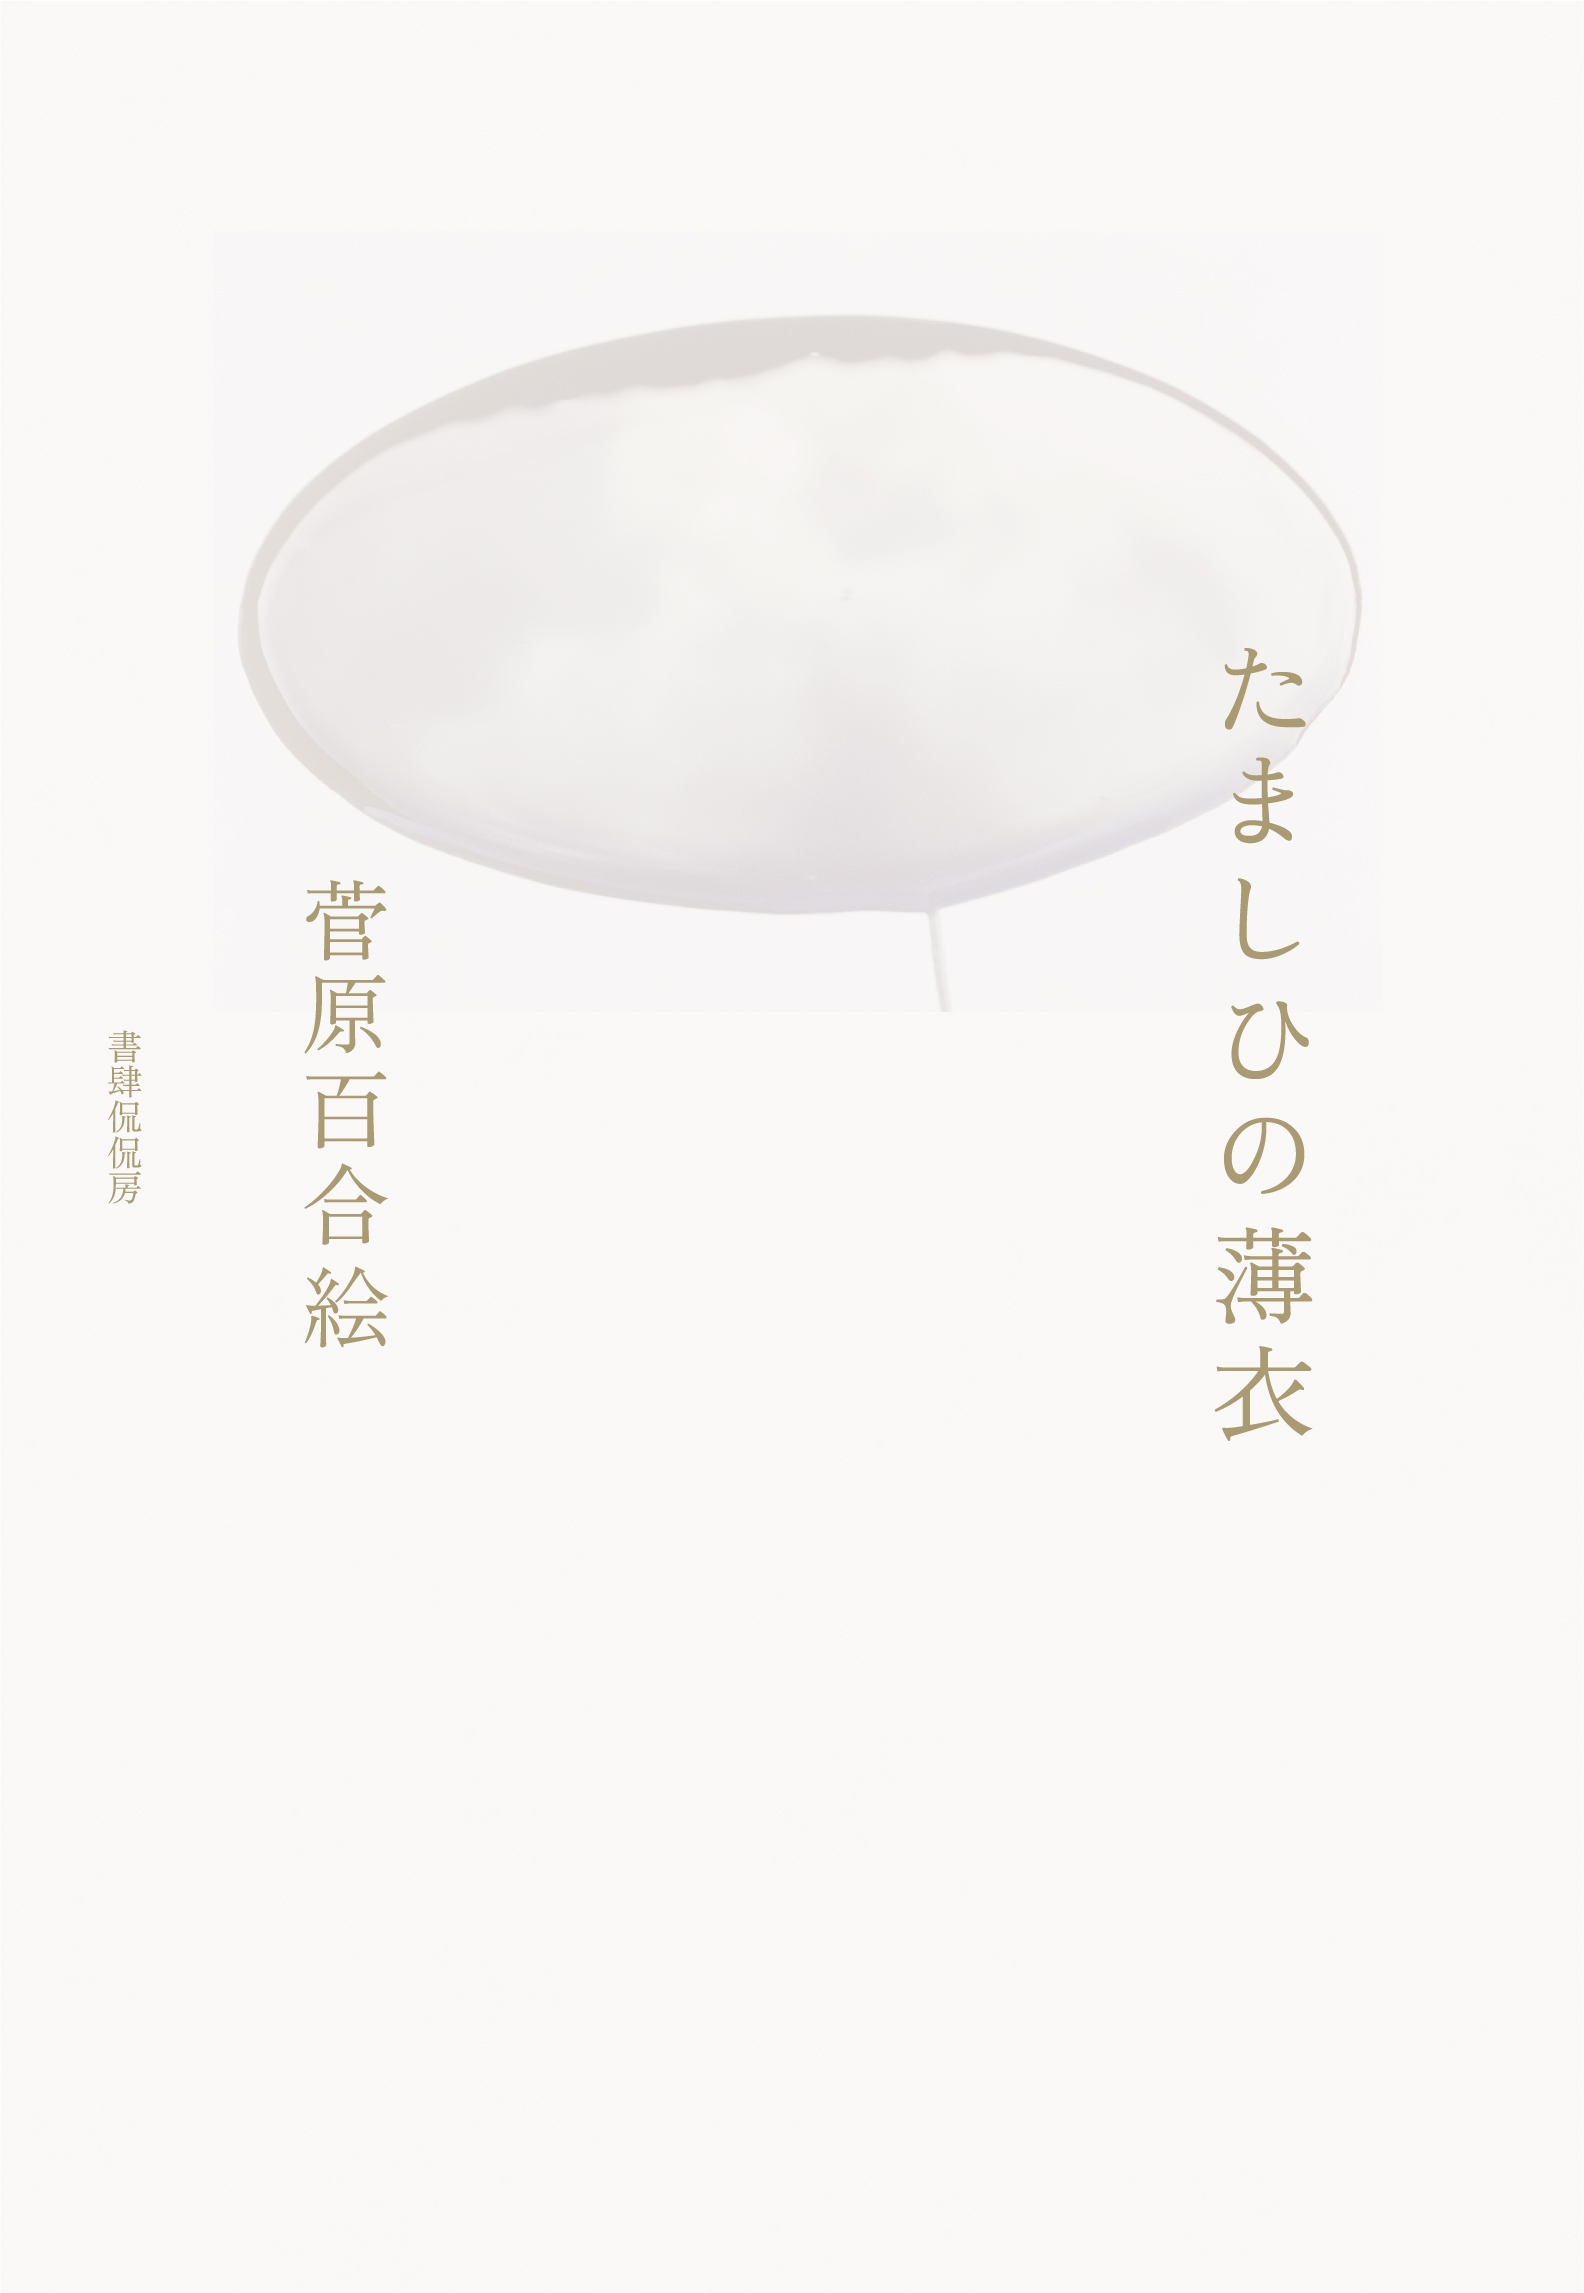 菅原百合絵の初歌集『たましひの薄衣』瑞々しい言葉から浮かぶ人生の「へだたり」と誠実な「まなざし」